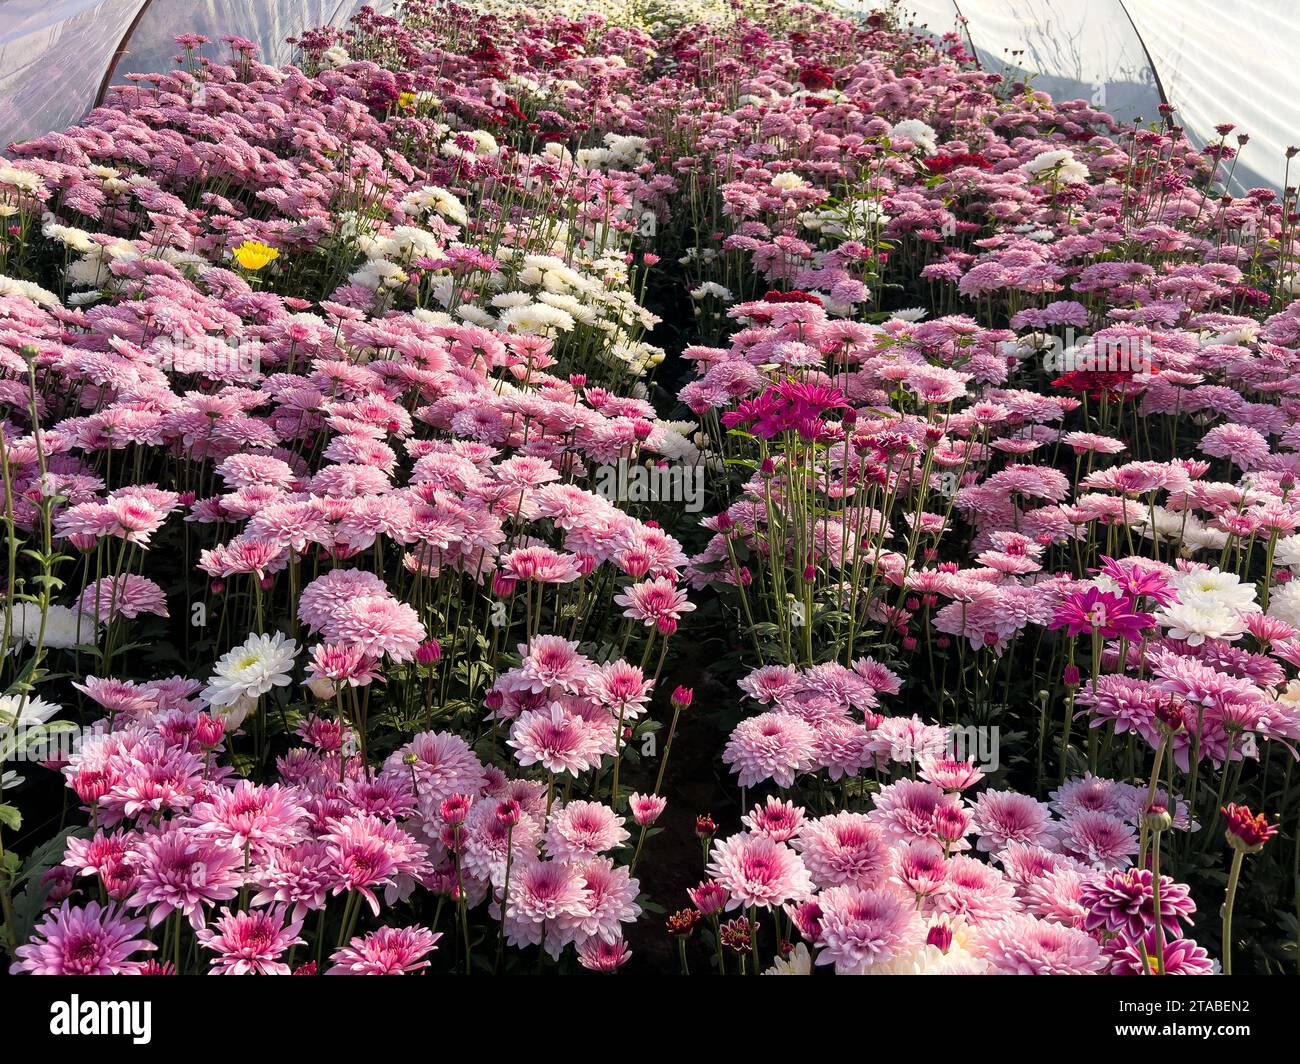 Pink gul e dawoodi chrysanthèmes fleurissant dans la serre sont cultivés pour le marché commercial Banque D'Images